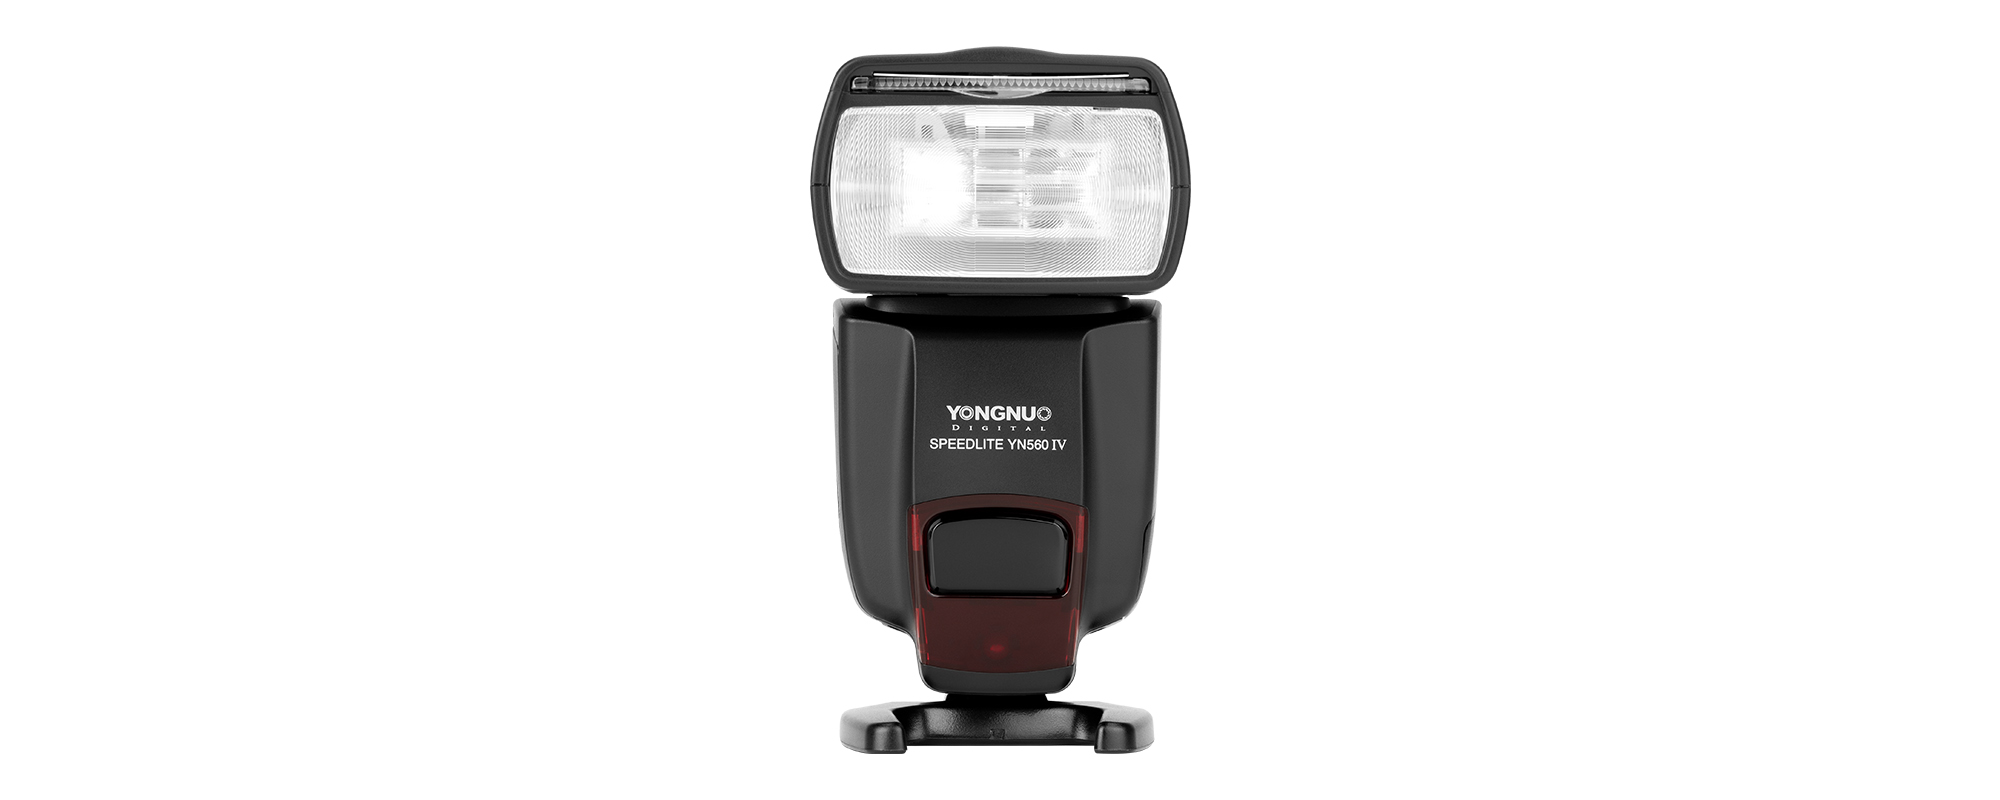 Yongnuo YN560 IV Negative Display Flash